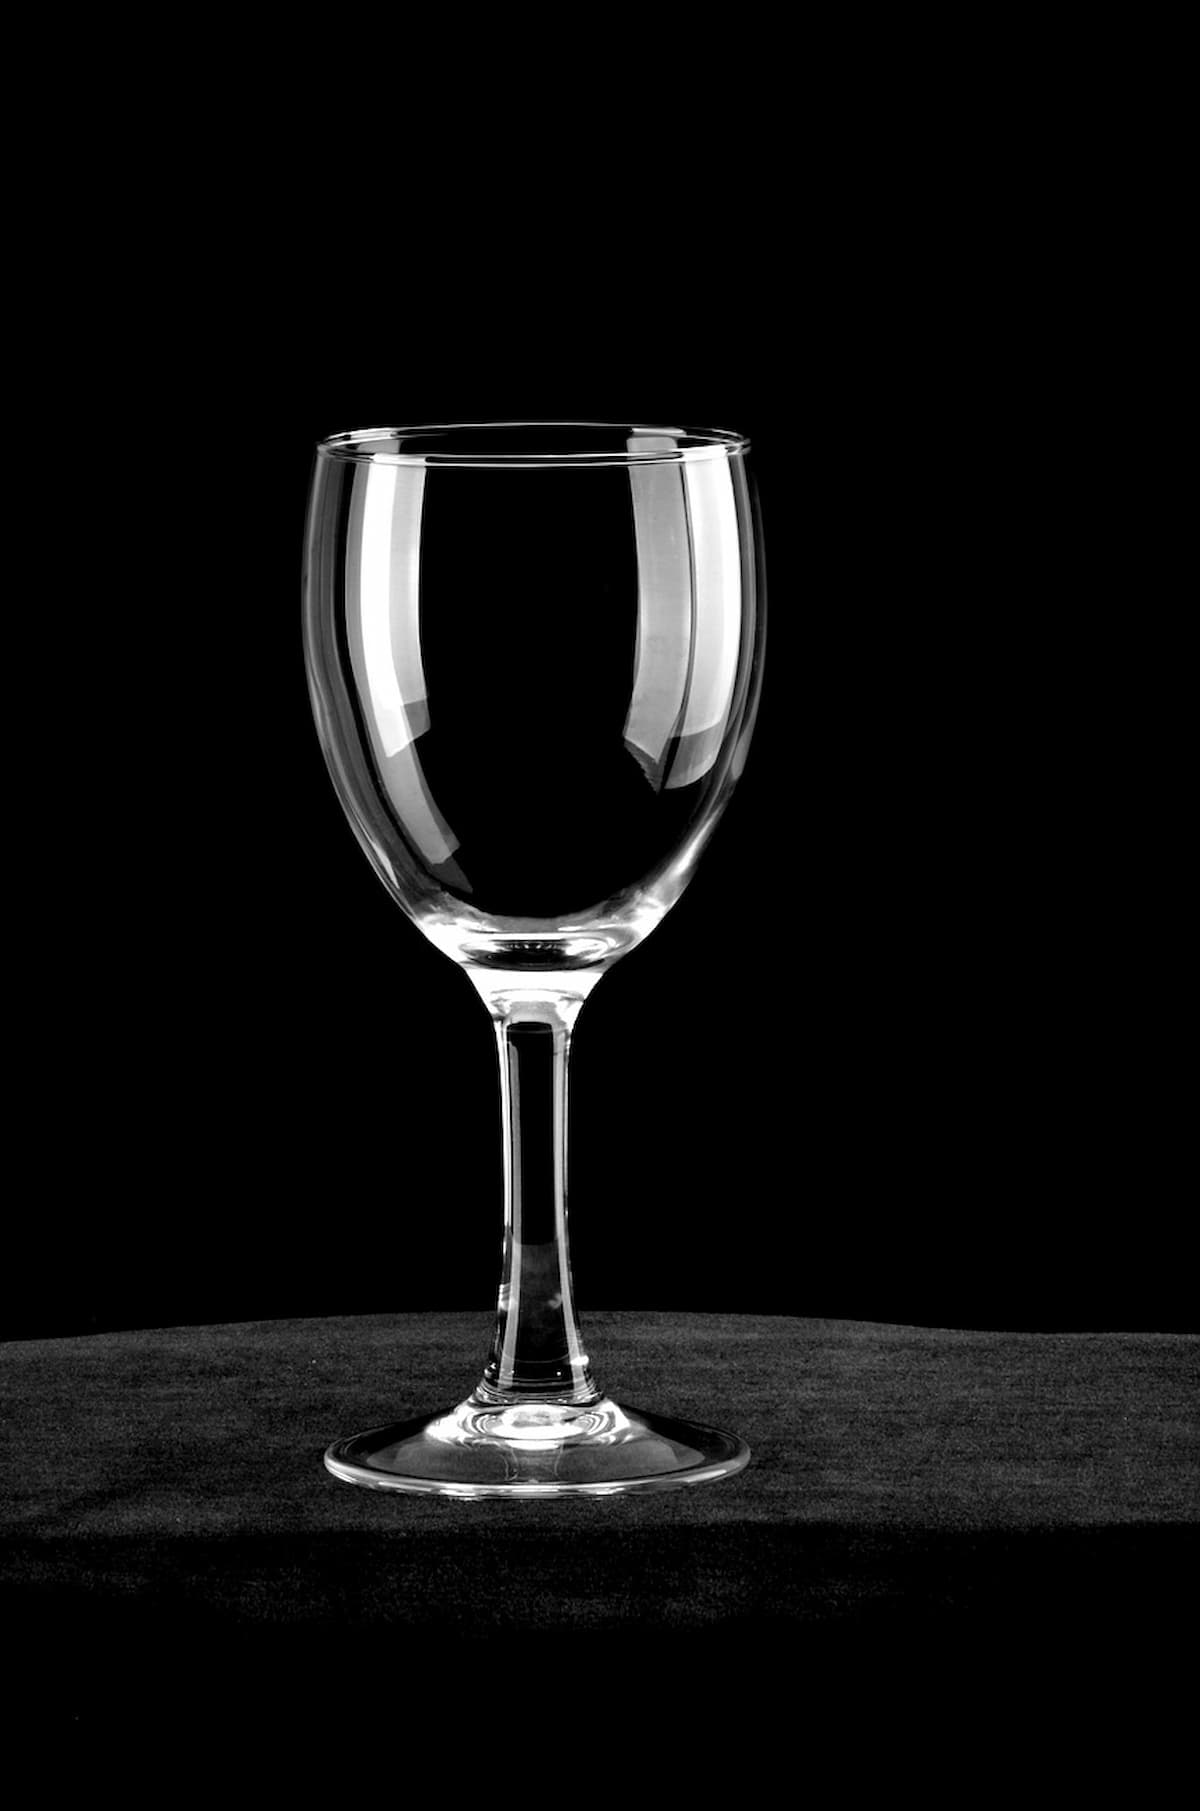 Uma taça de vinho no fundo preto